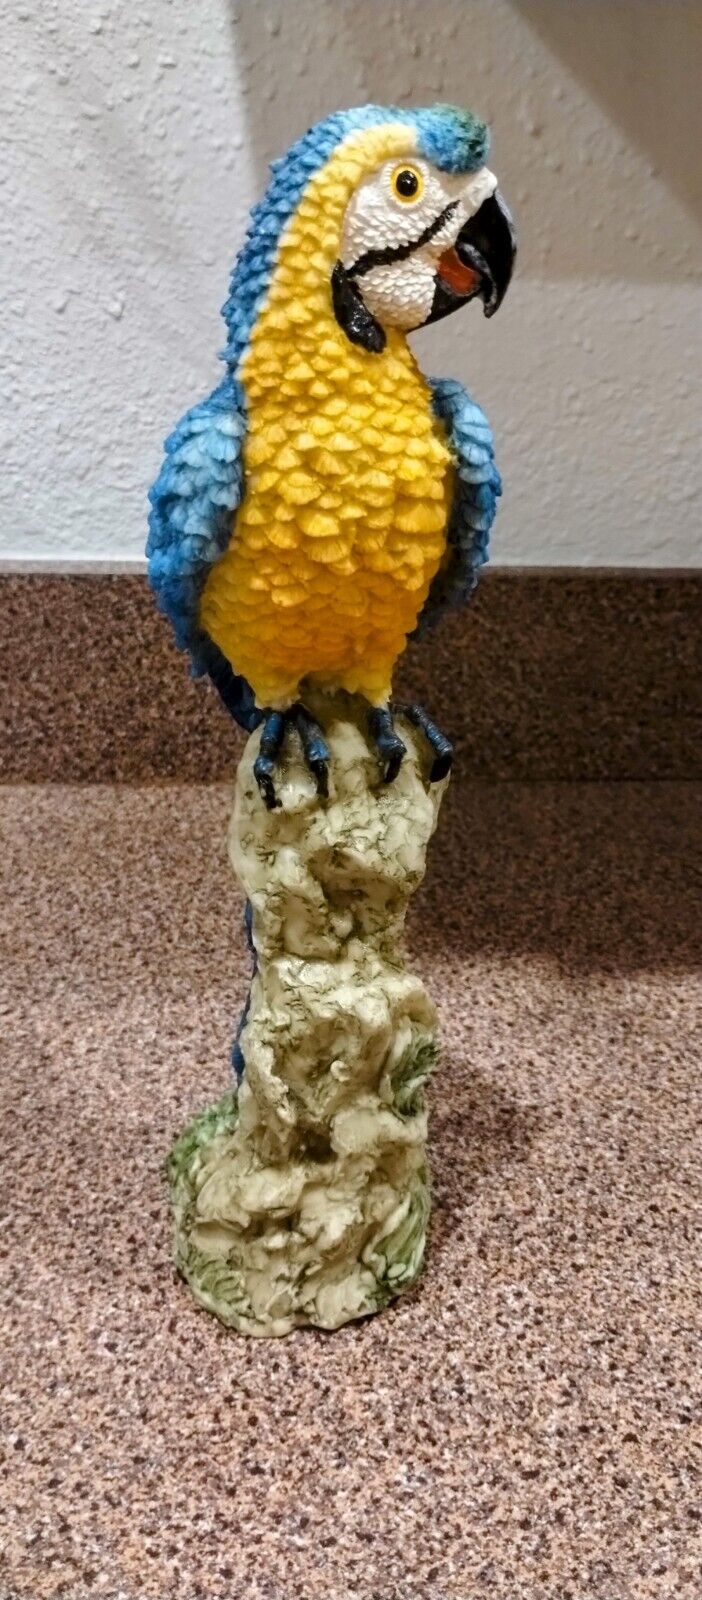 Blue Resin Bird McCaw Parrot 